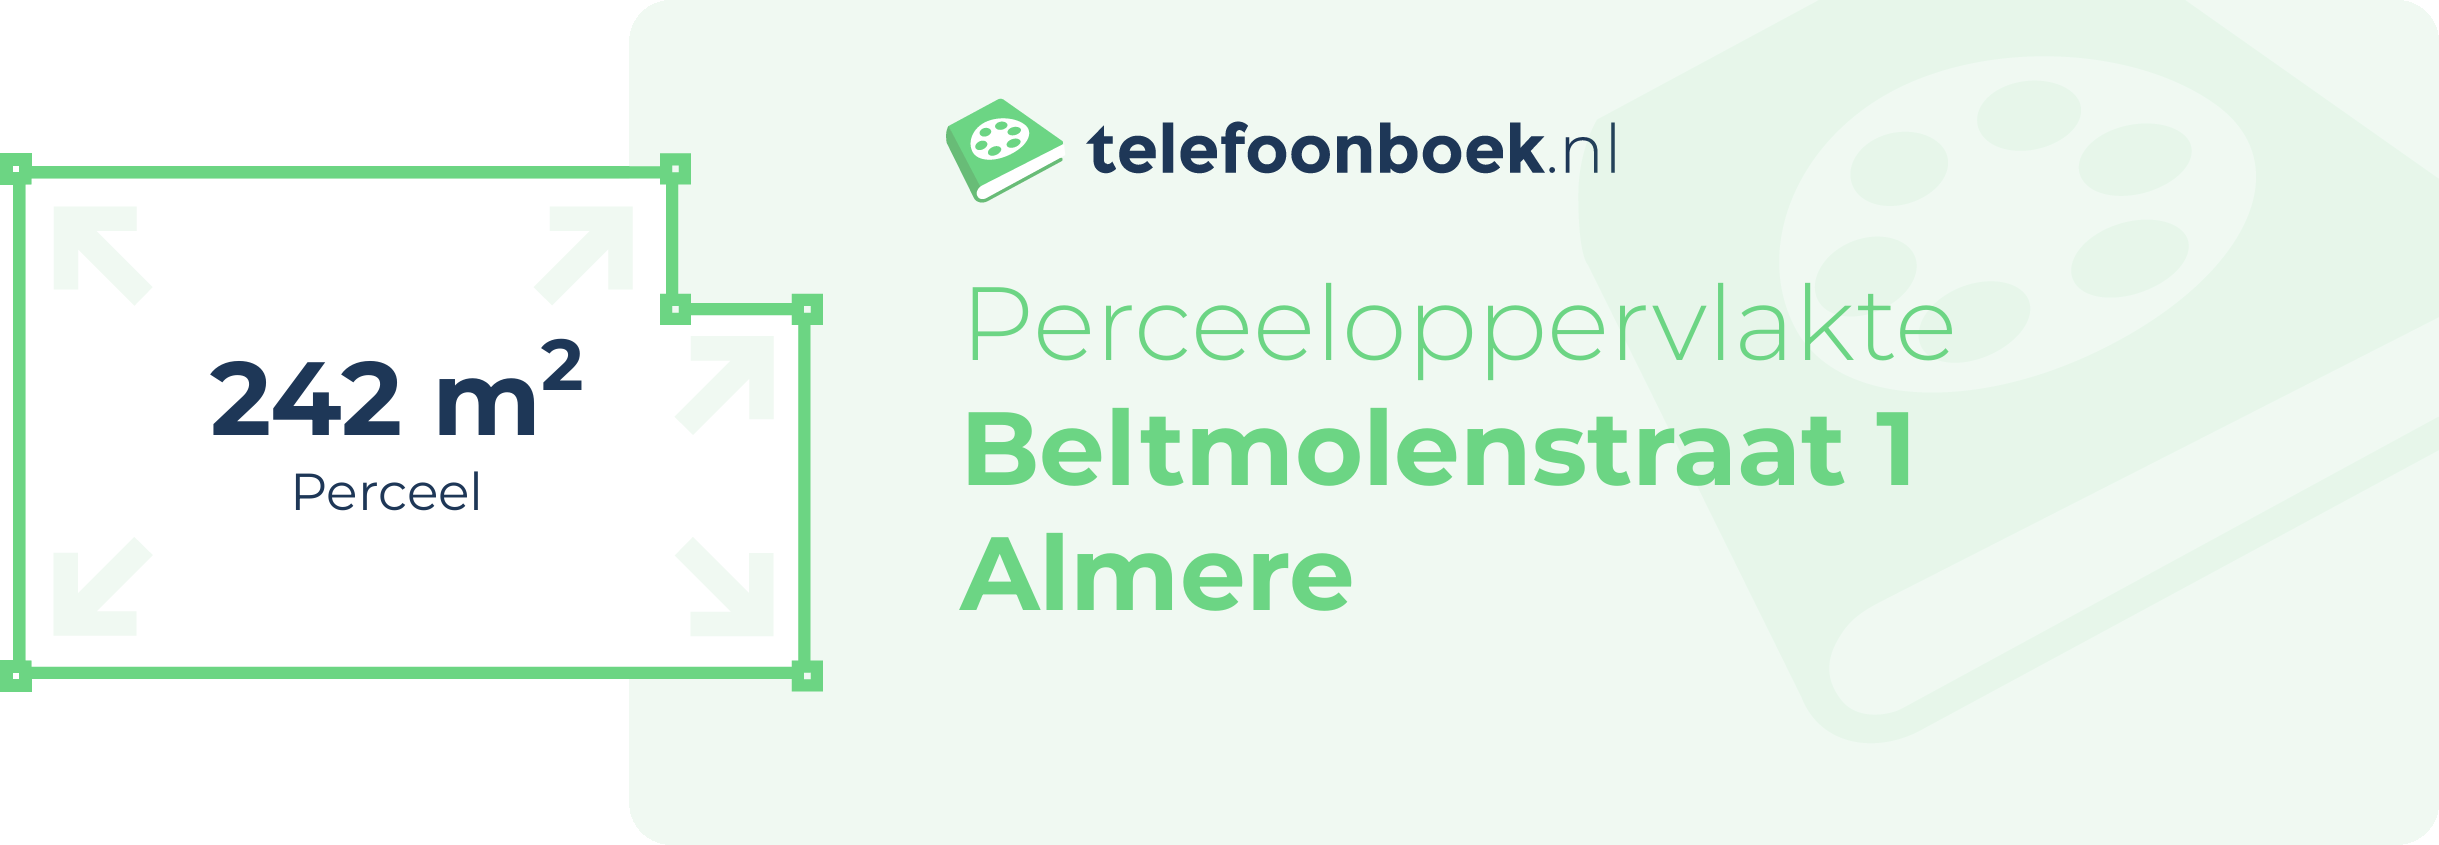 Perceeloppervlakte Beltmolenstraat 1 Almere